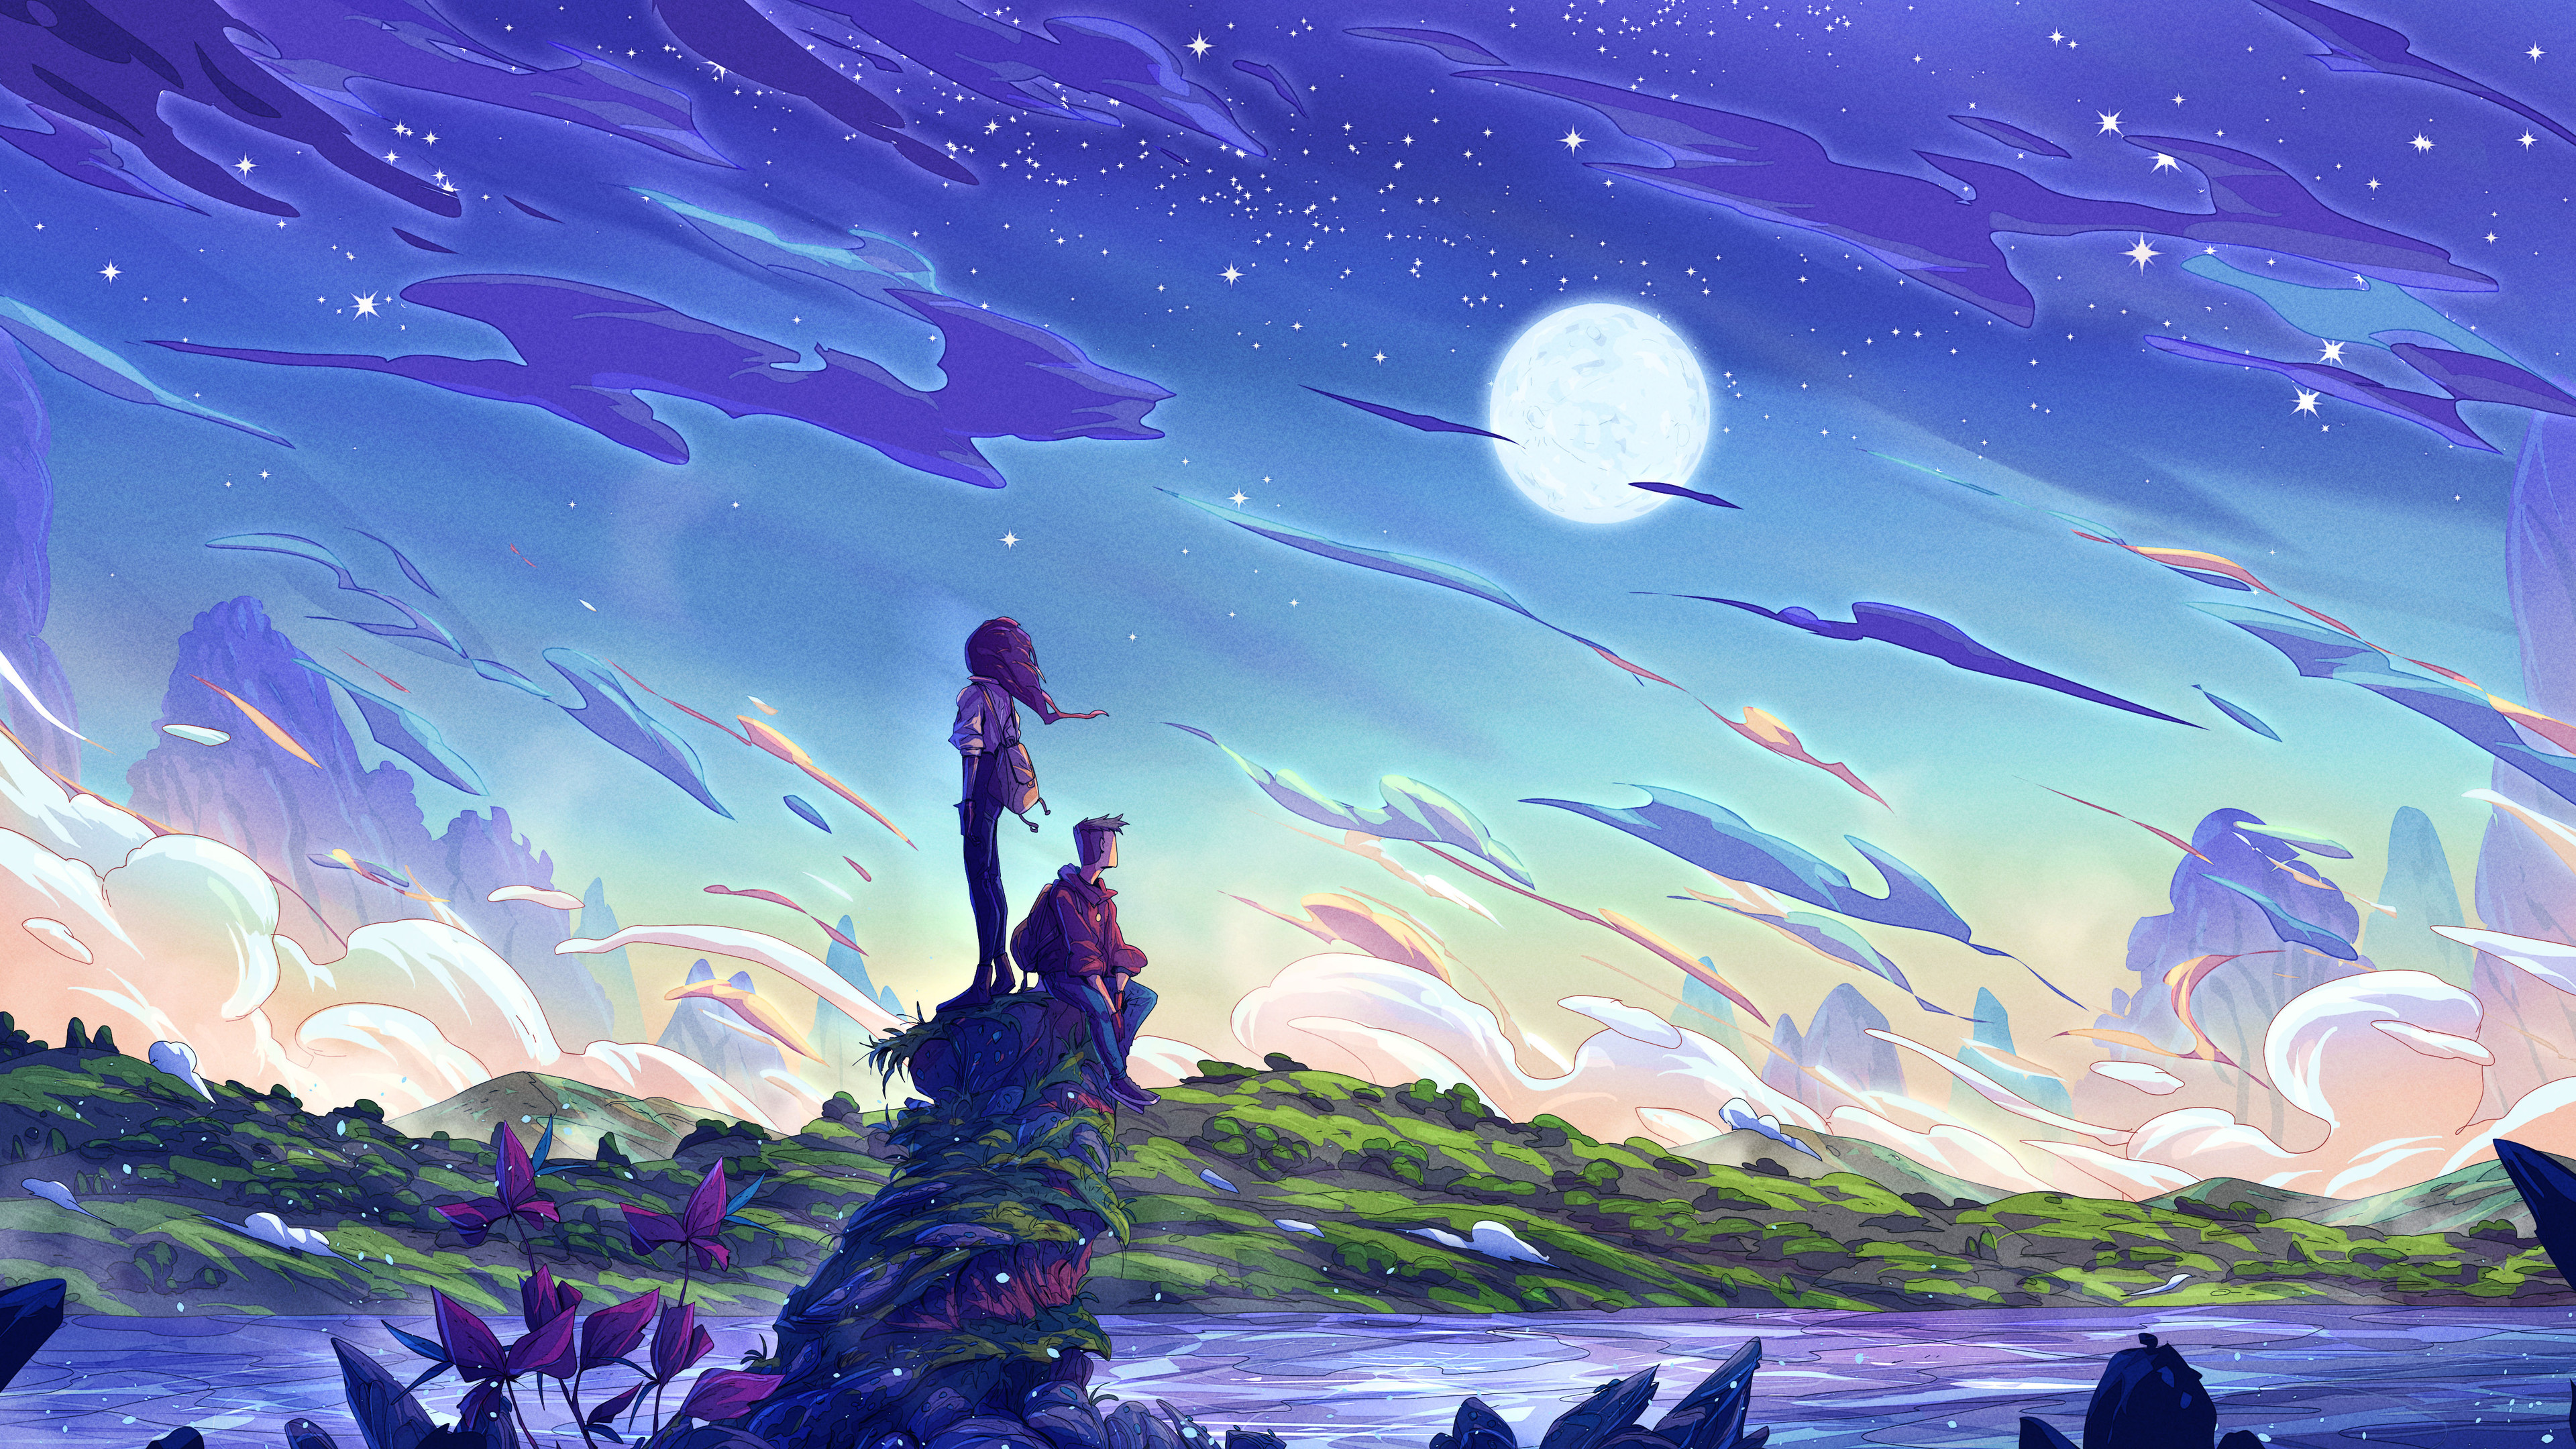 Christian Benavides Digital Art Fantasy Art Clouds Hills Grass Stars Night Traveler Mountains Moon S 3840x2160